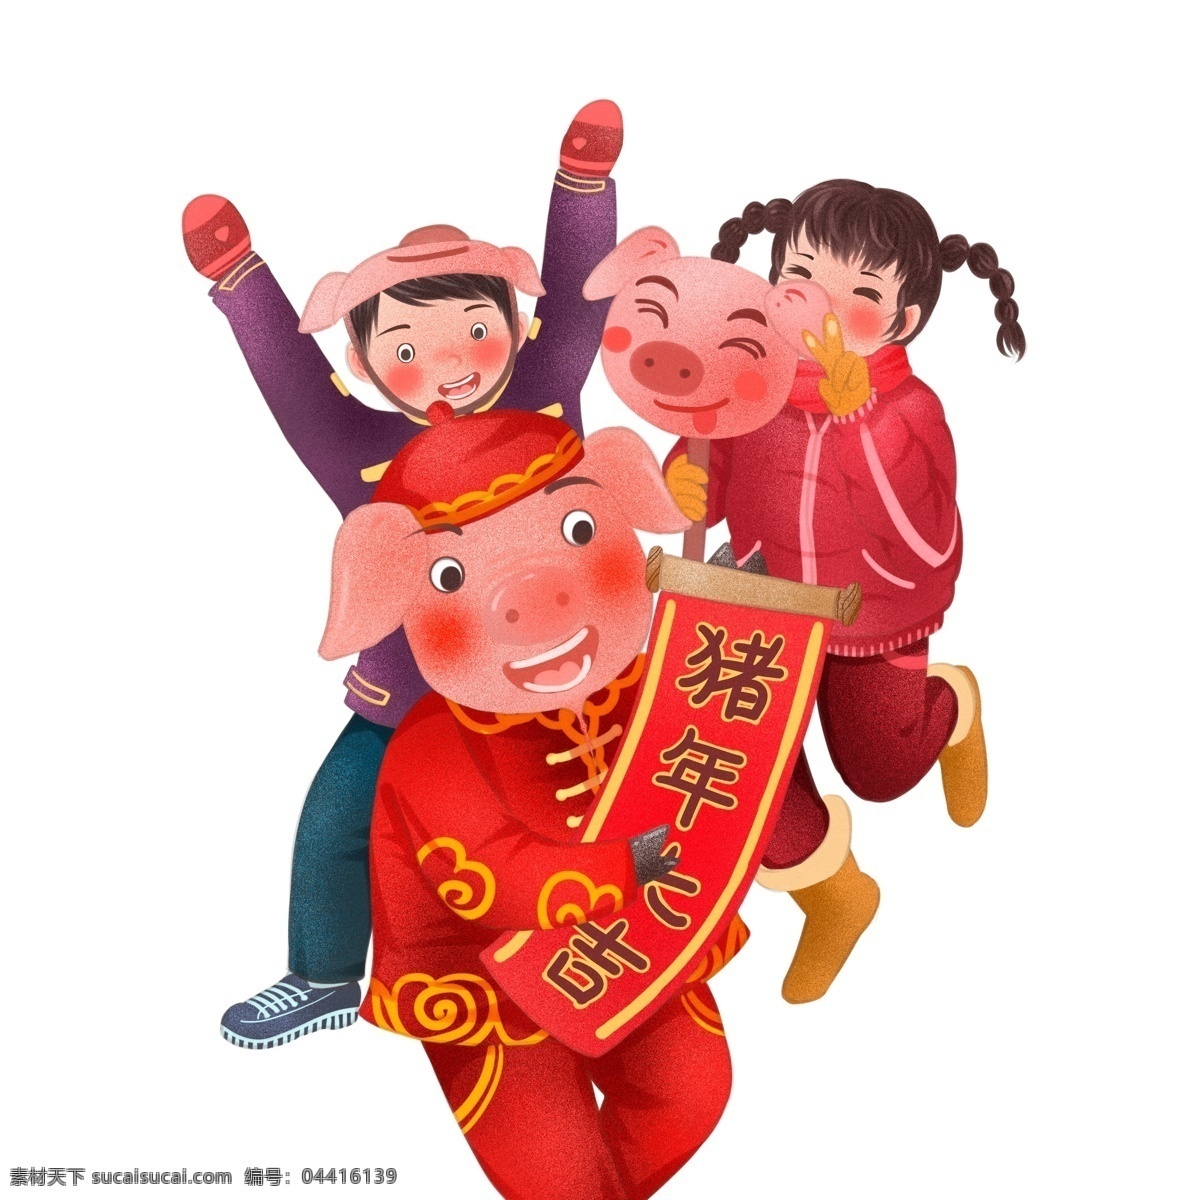 中国 风 新年 大吉 小 猪 小孩 贺岁 中国风 红色 喜庆 春节 插画 手绘 小猪 猪年大吉 对联女孩 猪猪 新春 猪年 2019年 小猪形象 猪年形象